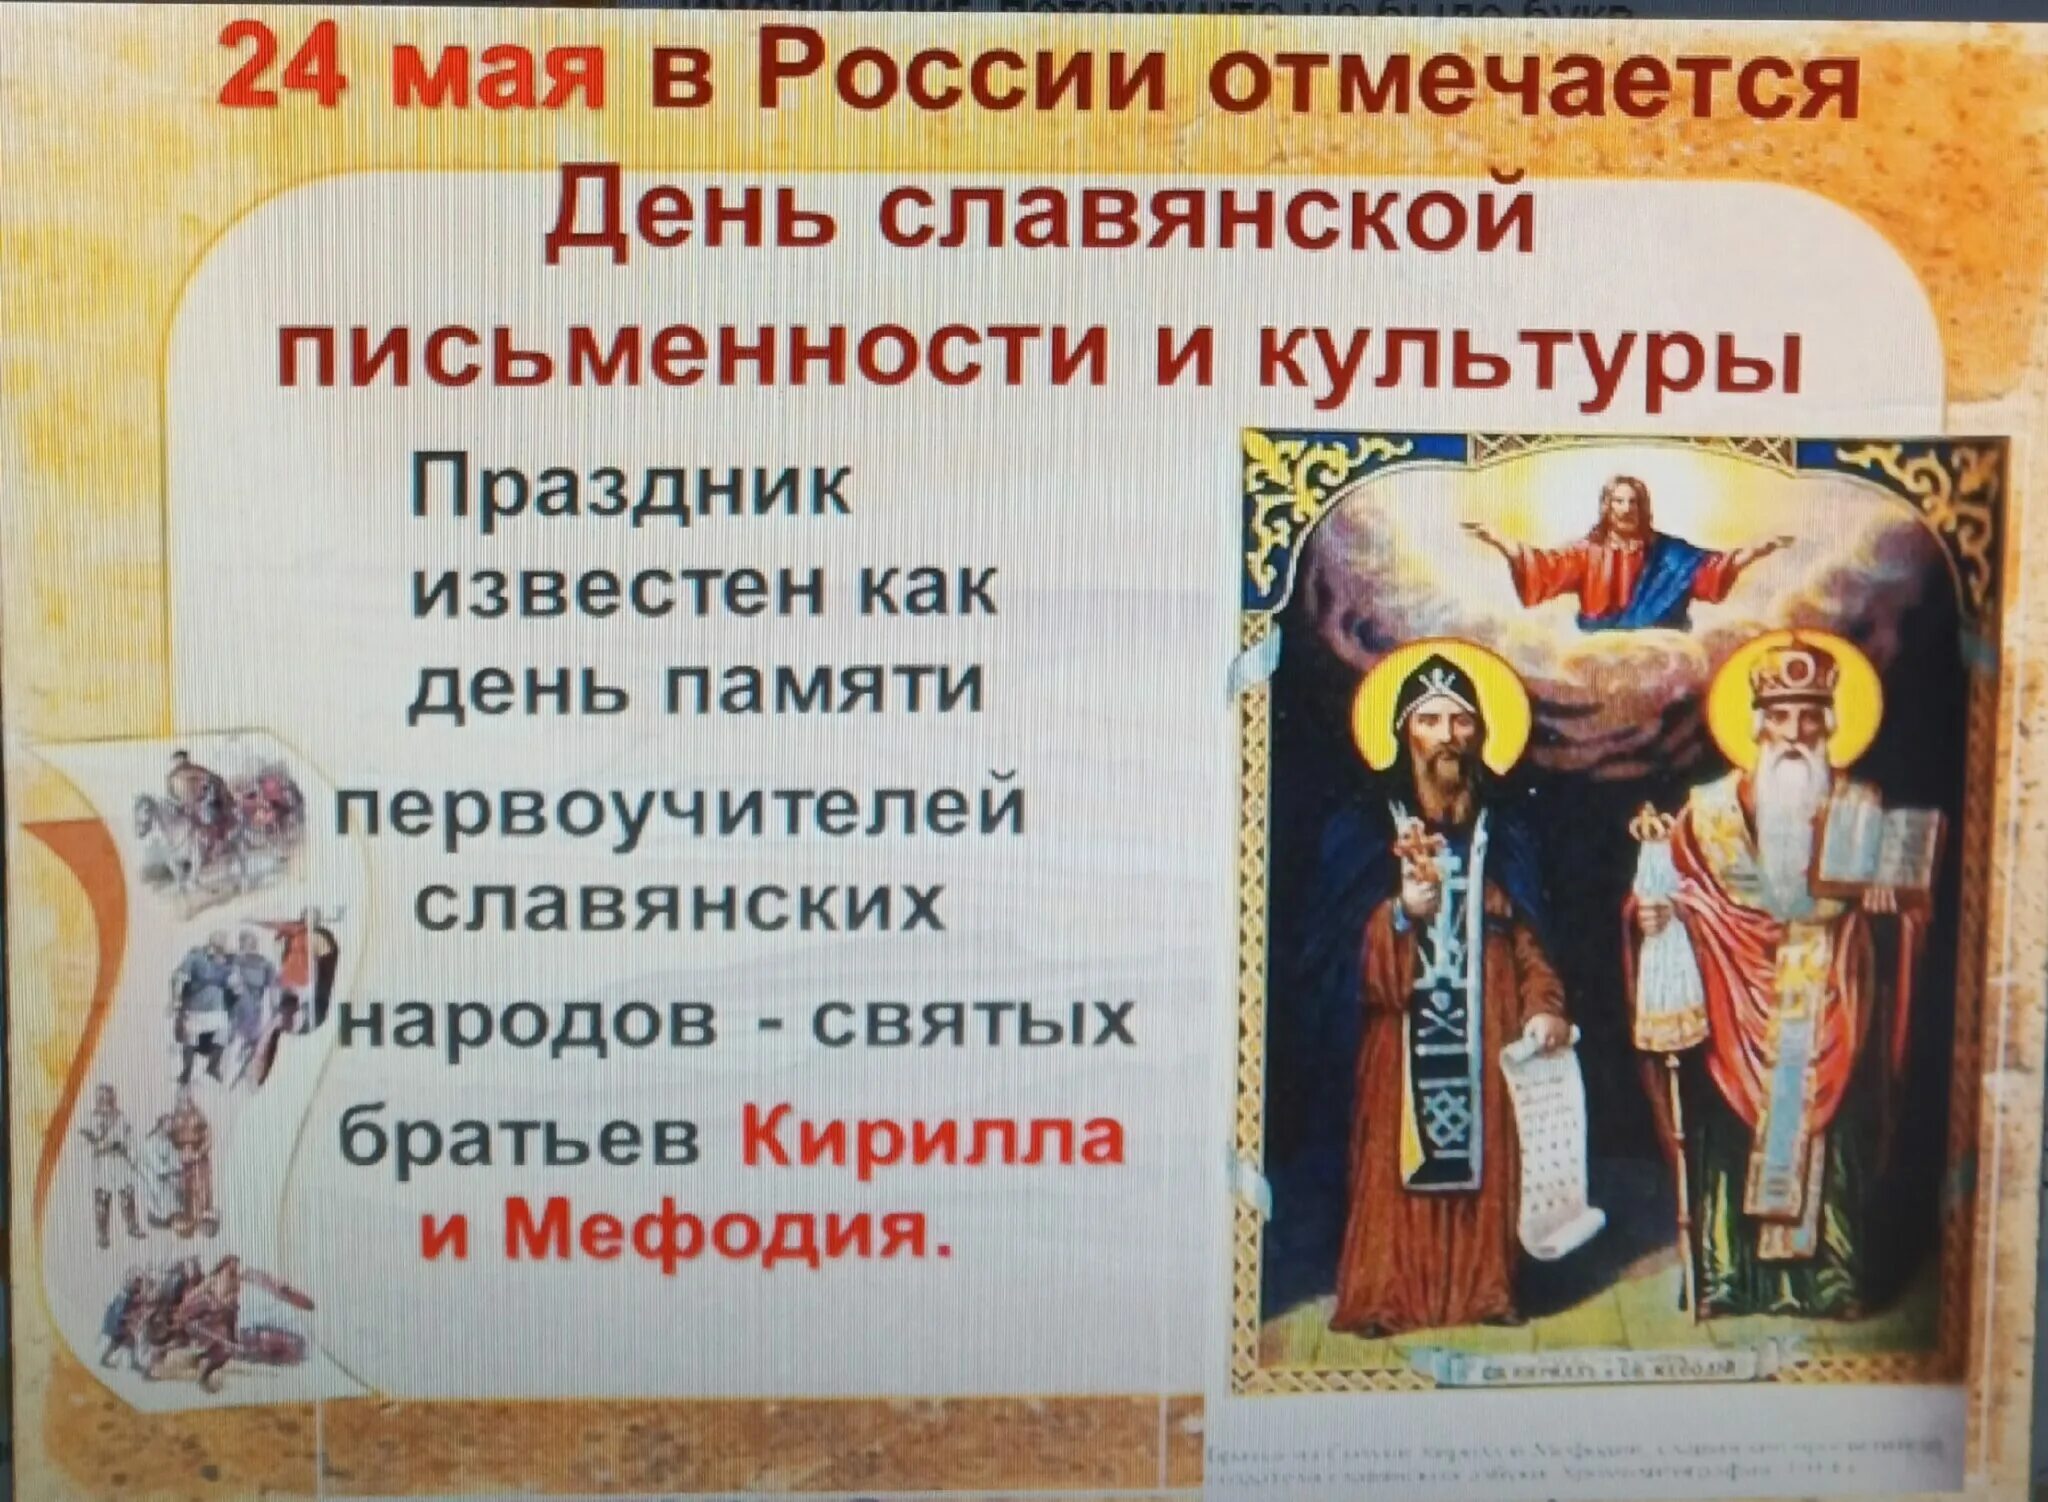 24 Мая отмечается день славянской письменности и культуры..